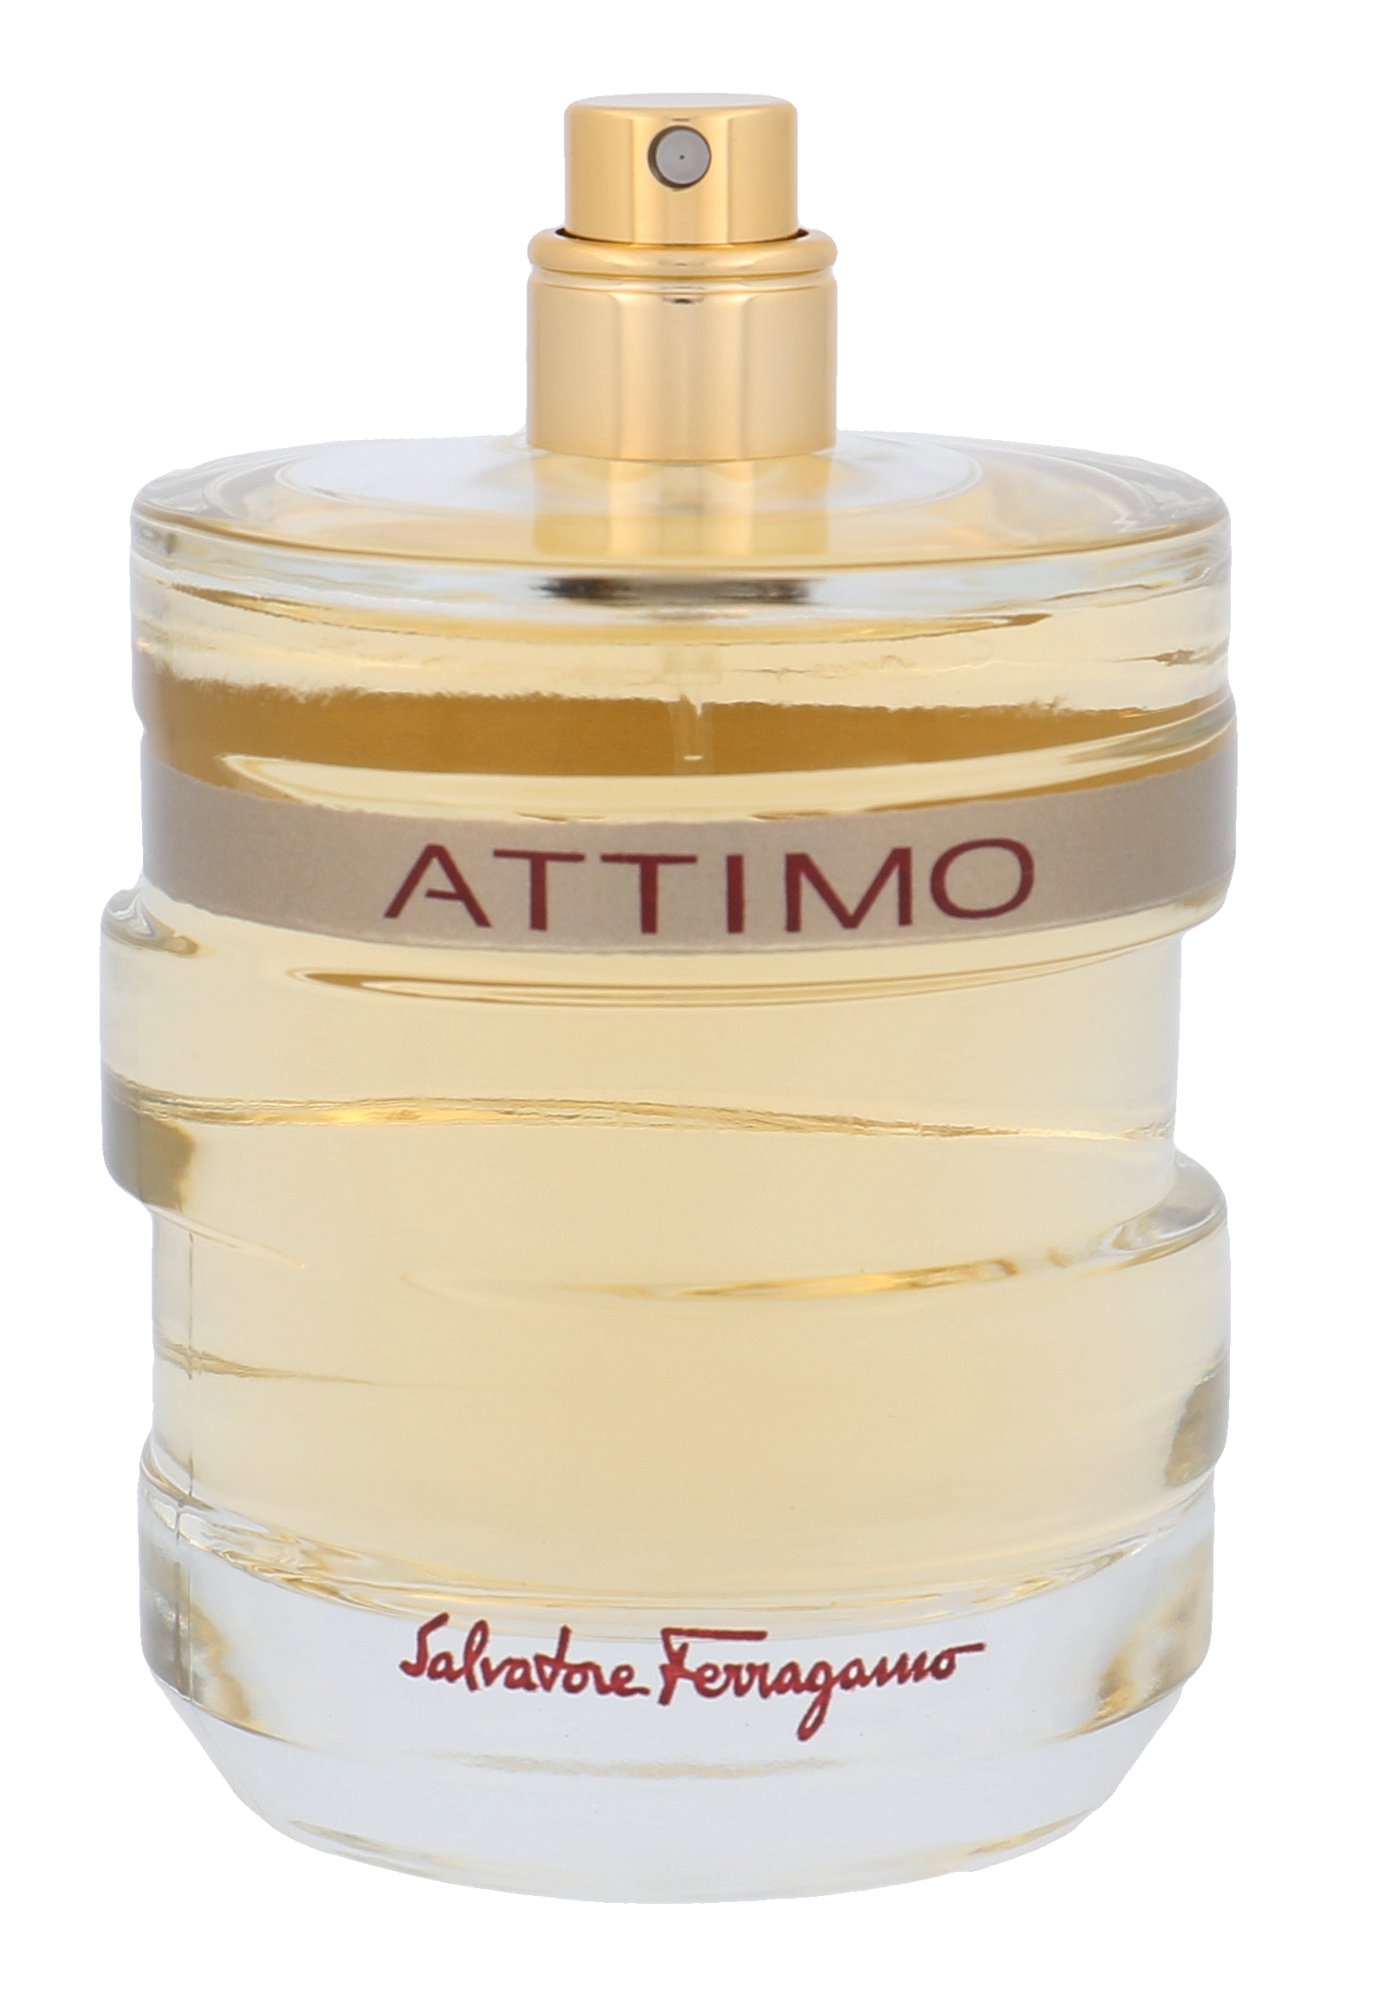 Salvatore Ferragamo Attimo, Vzorka vône